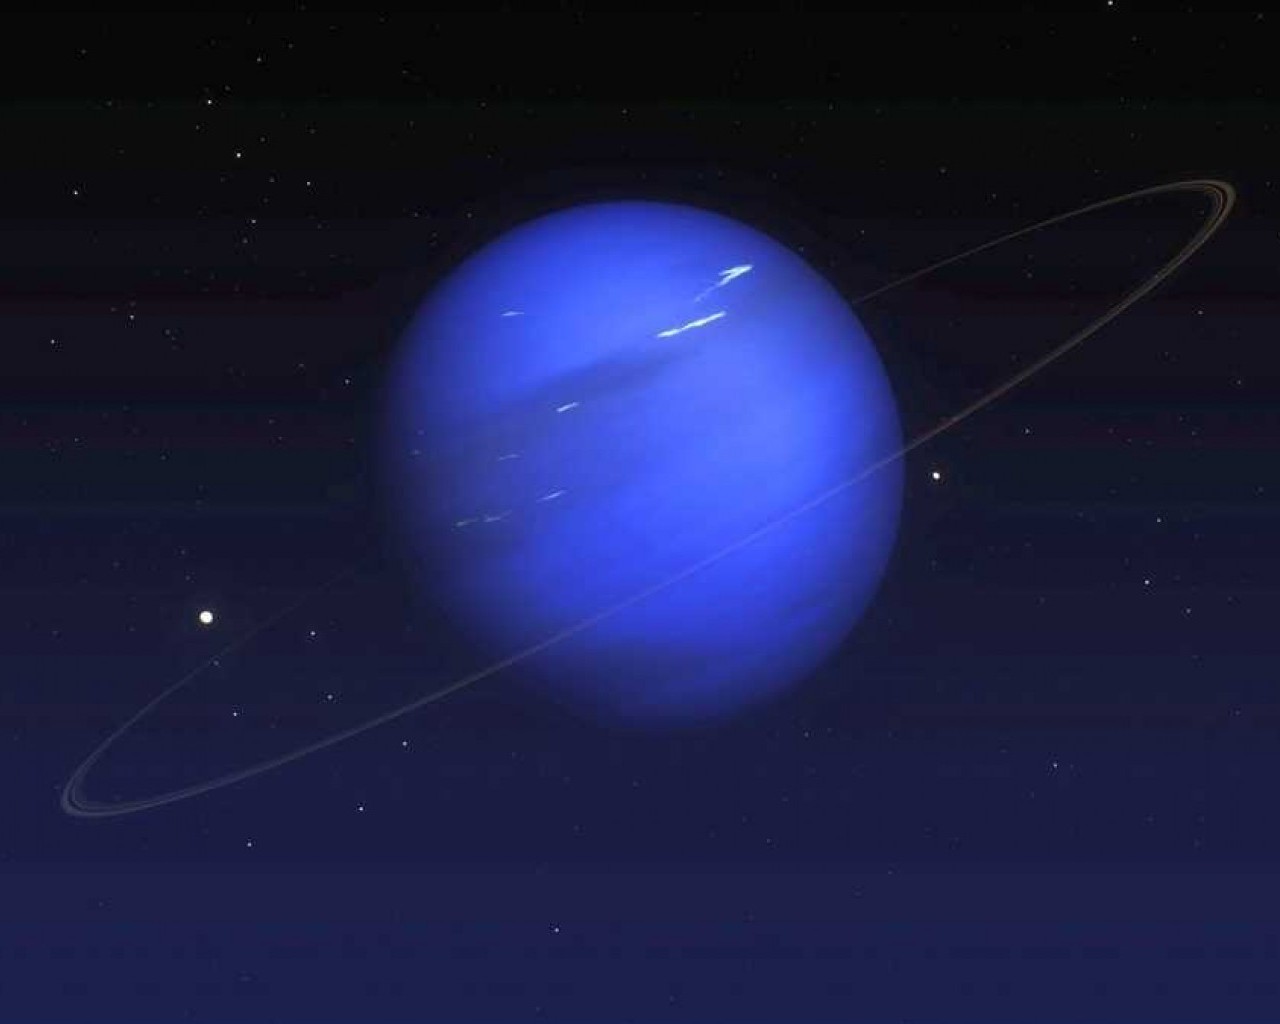 Нептун - крупнейшая и самая далекая планета Солнечной системы с глубокими водными океанами и загадочной атмосферой